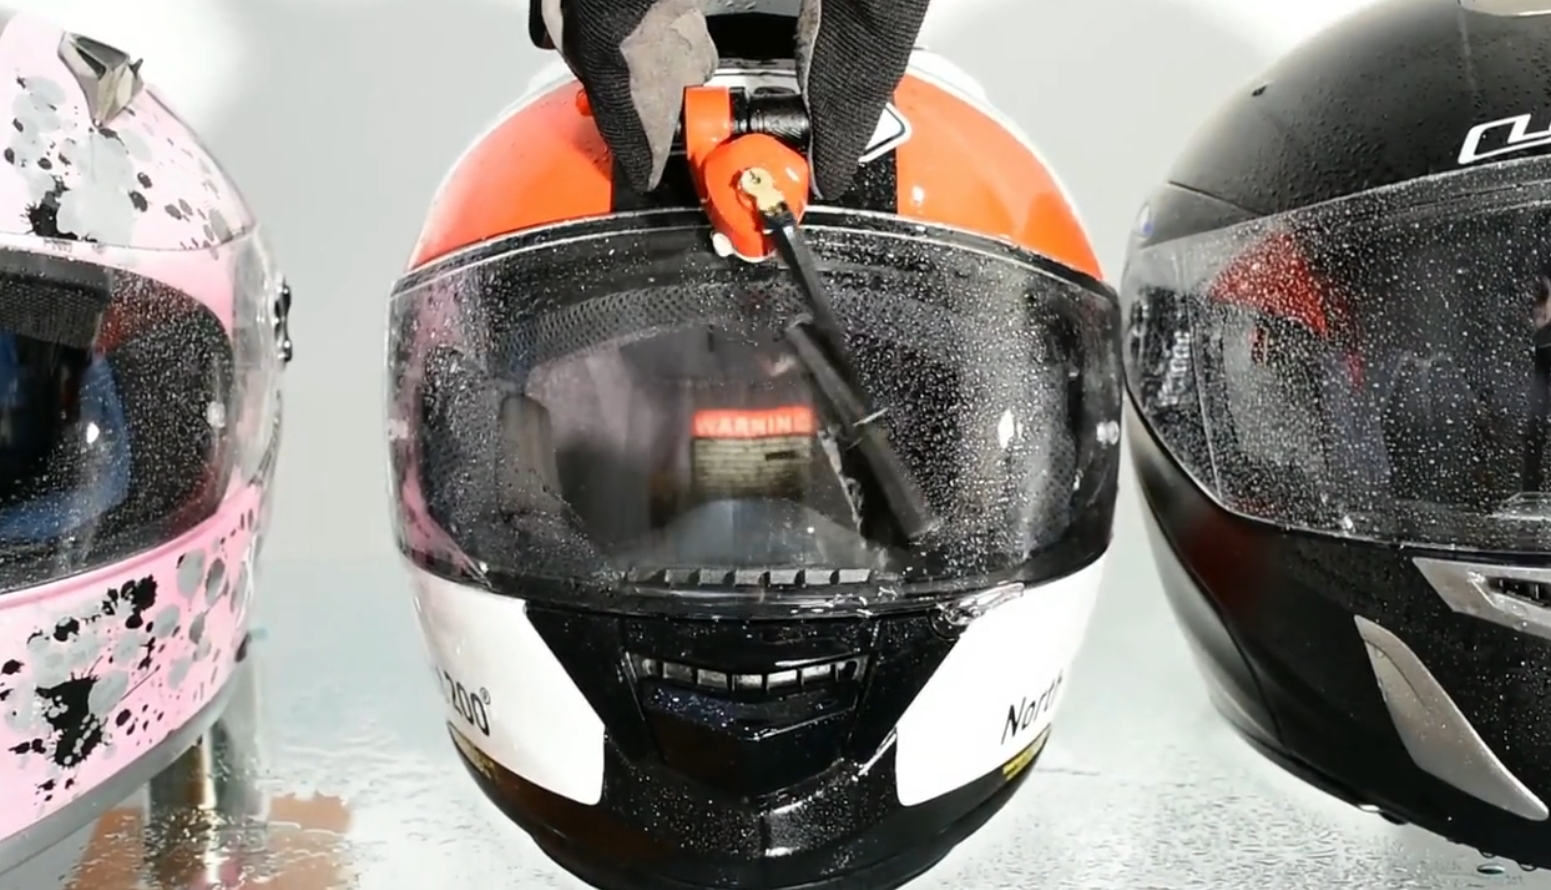 Ir al circuito Mañana Conceder WiPEY, el limpiaparabrisas para casco de moto | Computer Hoy